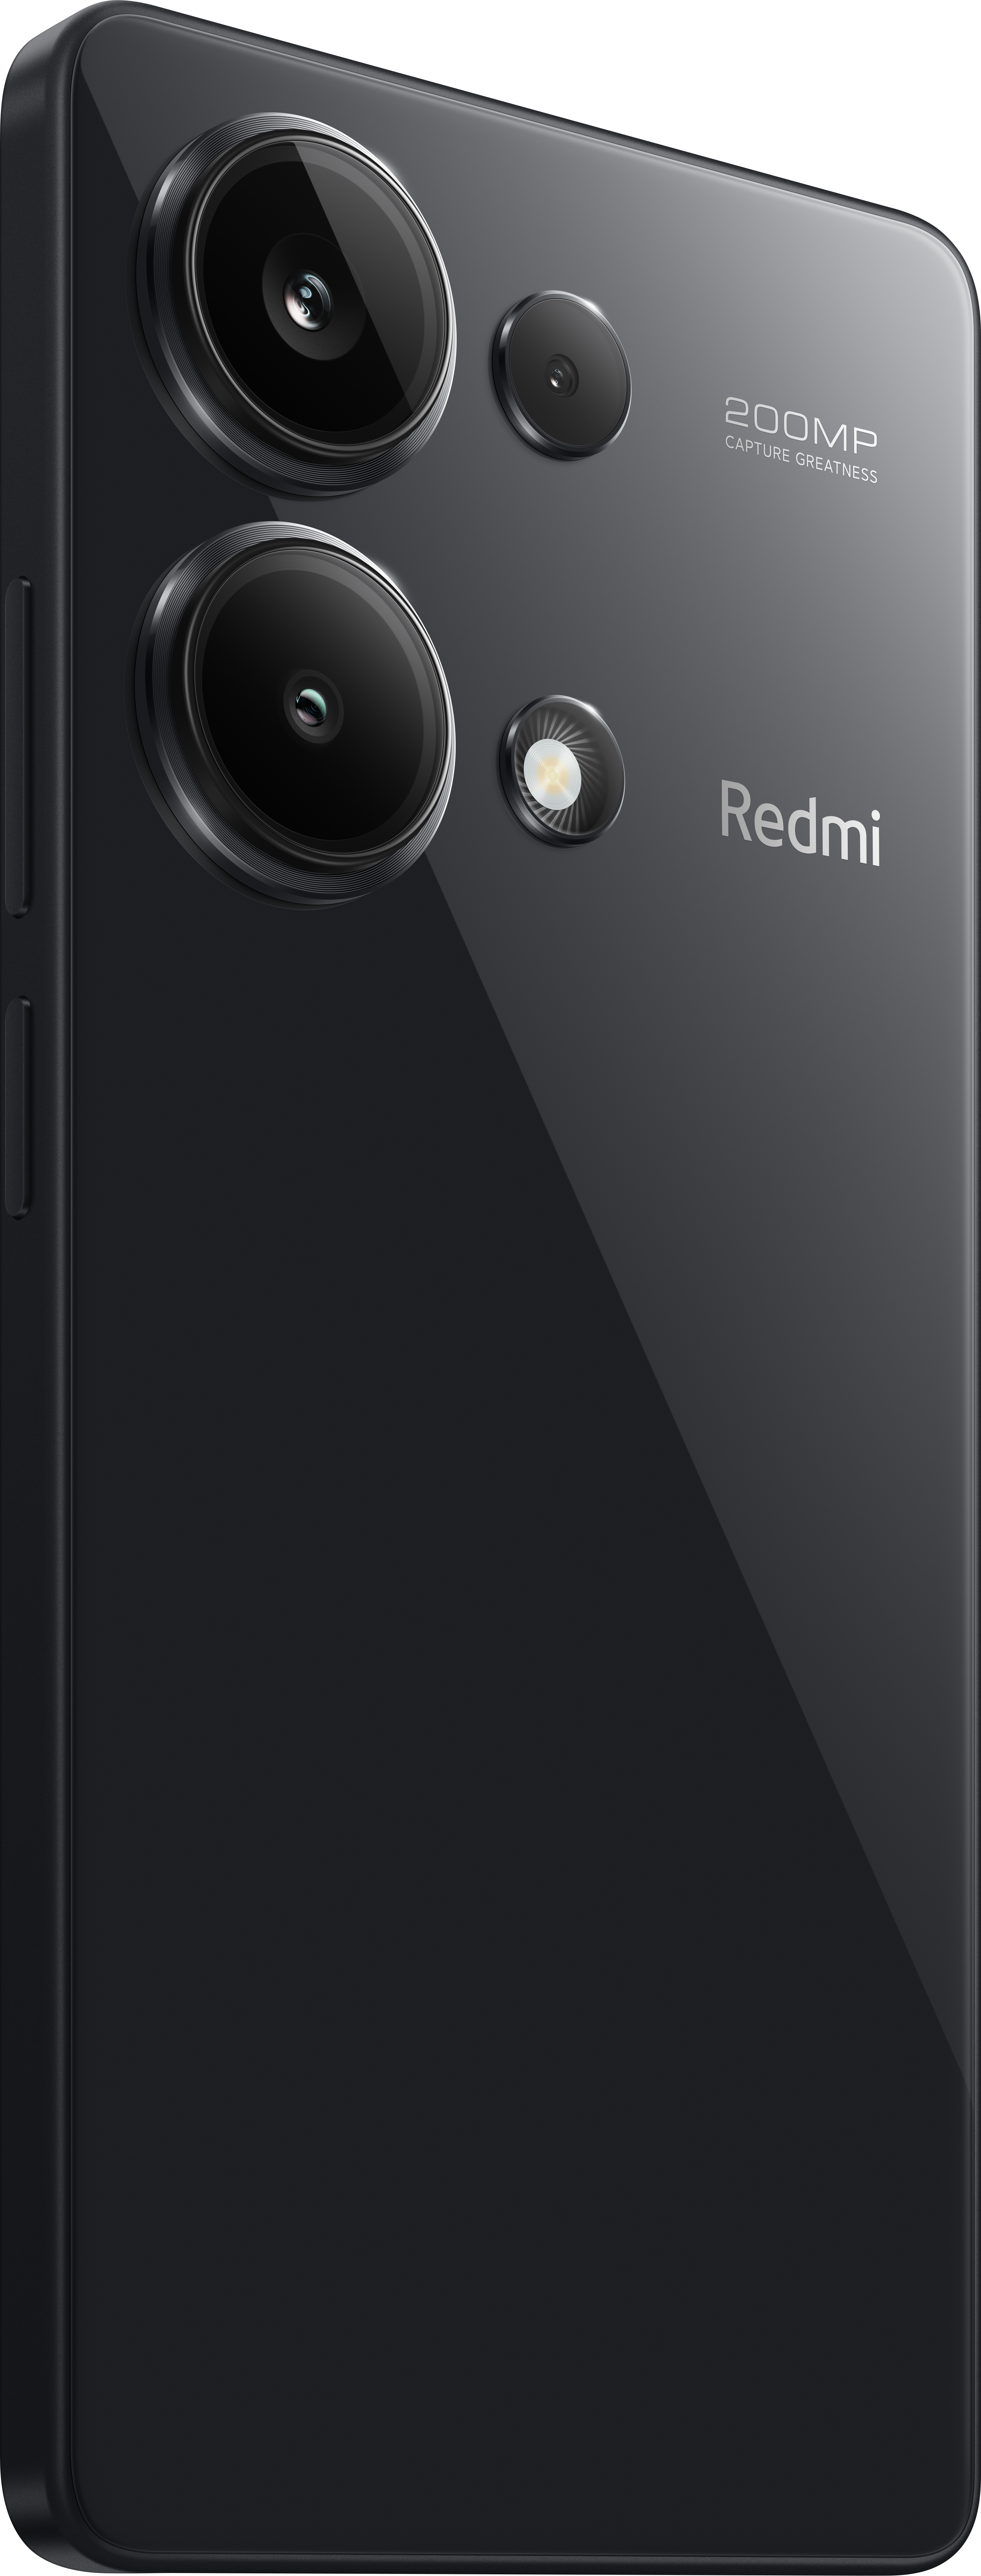 Midnight 256 13 Note Pro Black Dual Redmi GB XIAOMI SIM